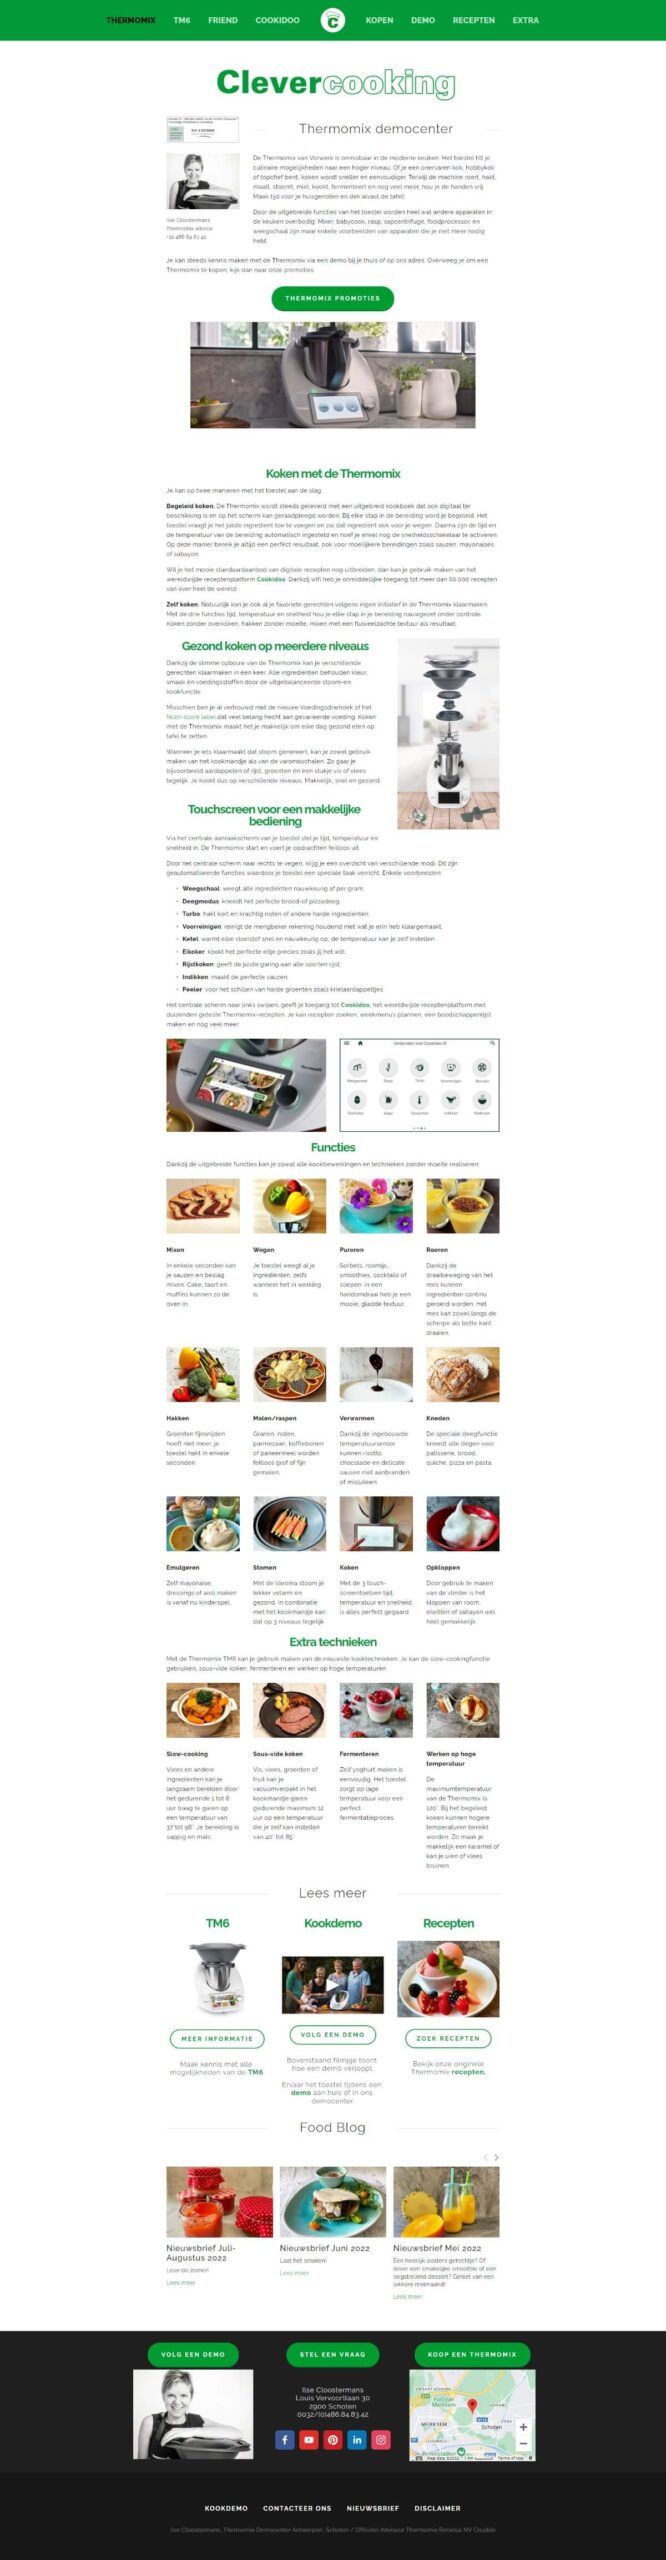 website print screen desktop